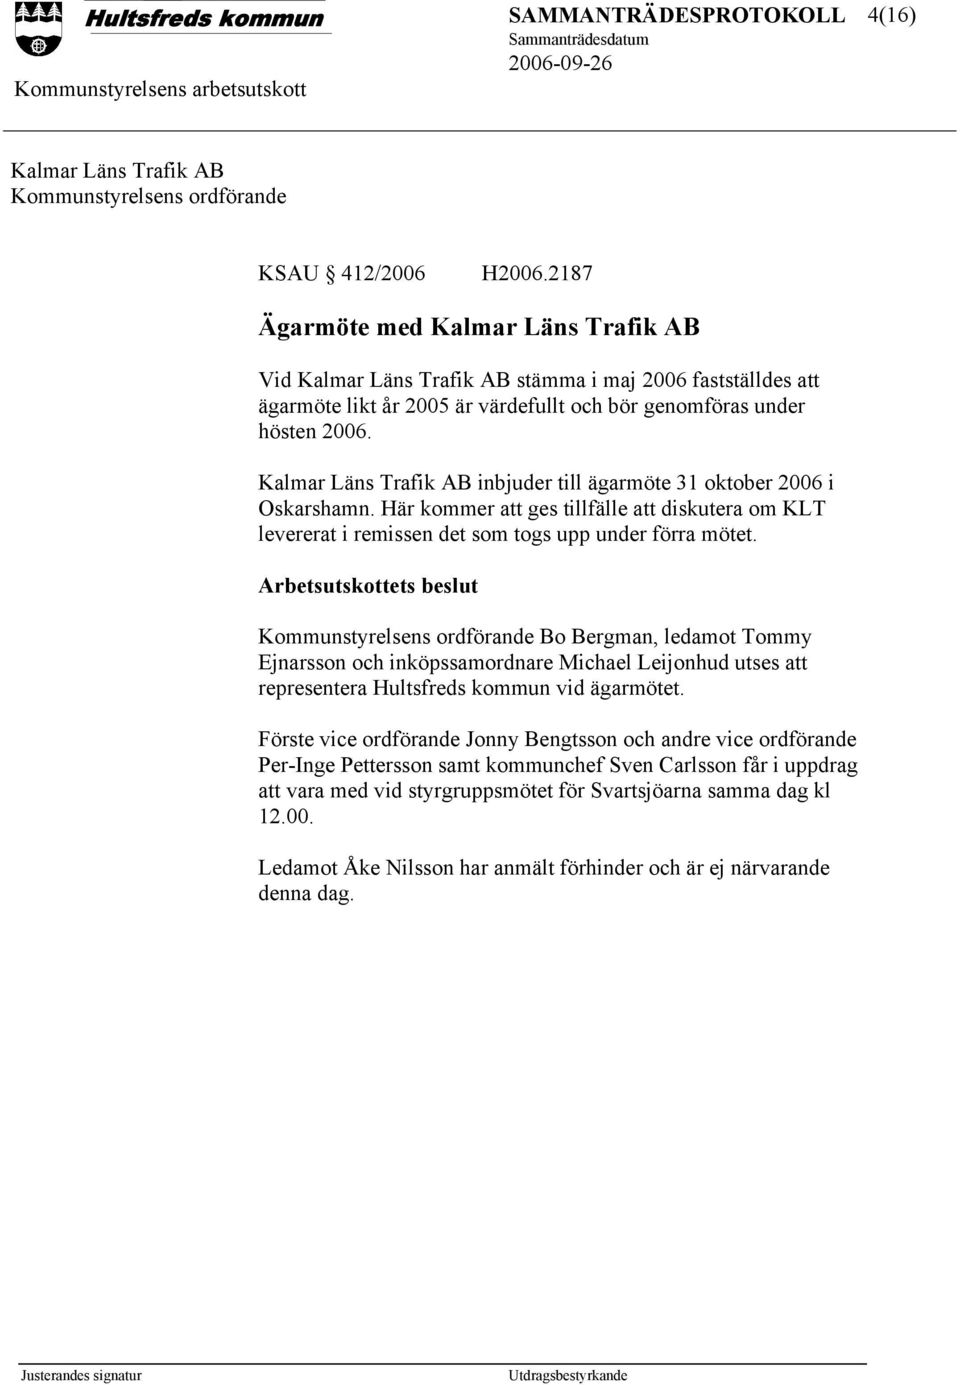 Kalmar Läns Trafik AB inbjuder till ägarmöte 31 oktober 2006 i Oskarshamn. Här kommer att ges tillfälle att diskutera om KLT levererat i remissen det som togs upp under förra mötet.